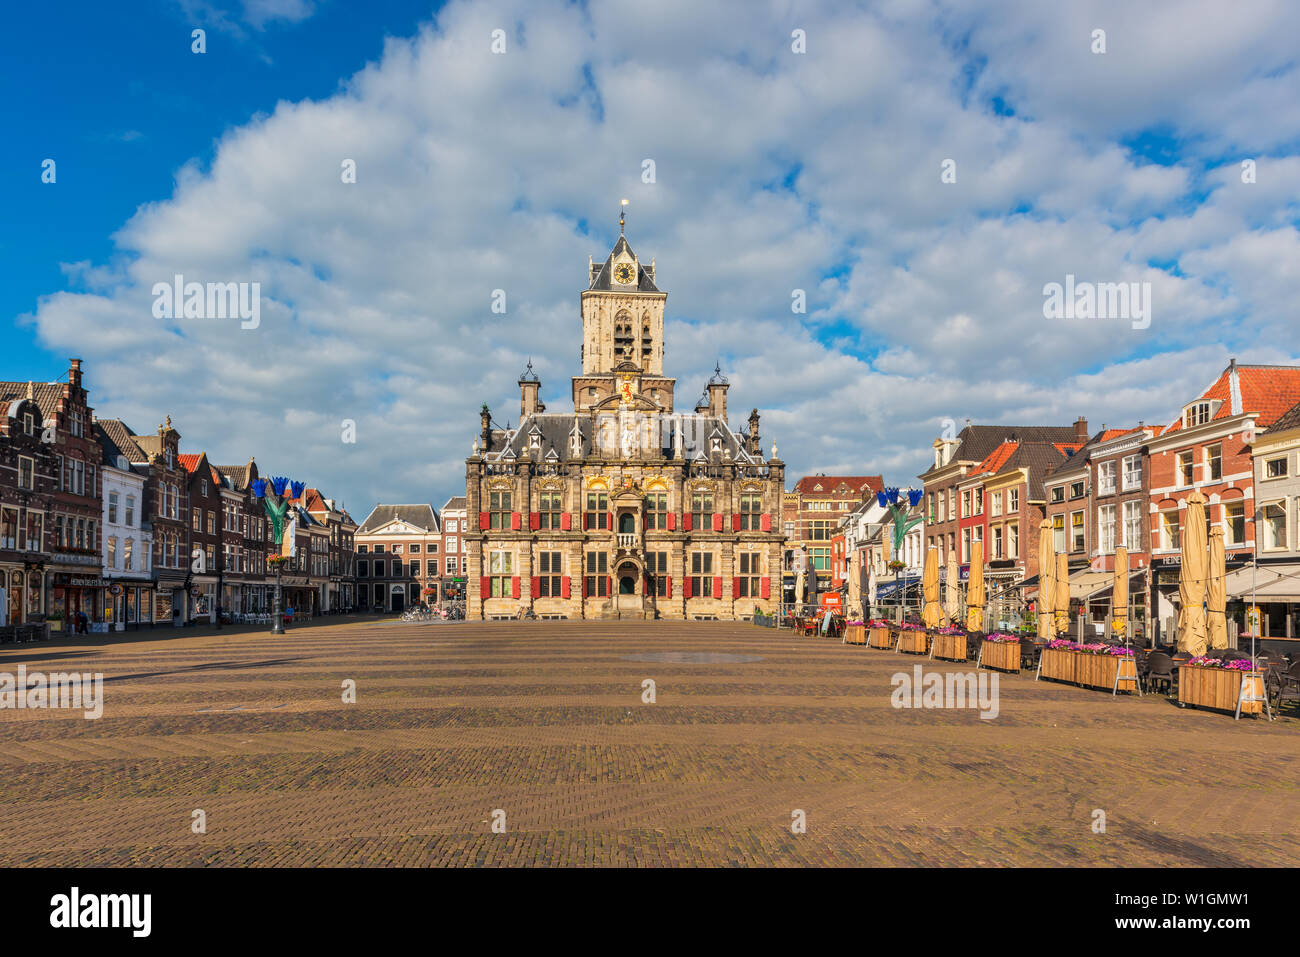 Il municipio e la piazza del mercato di Delft, Paesi Bassi. Delft è una vecchia città olandese che è noto per le sue ceramiche, canali e pittore Johannes Vermeer. Foto Stock